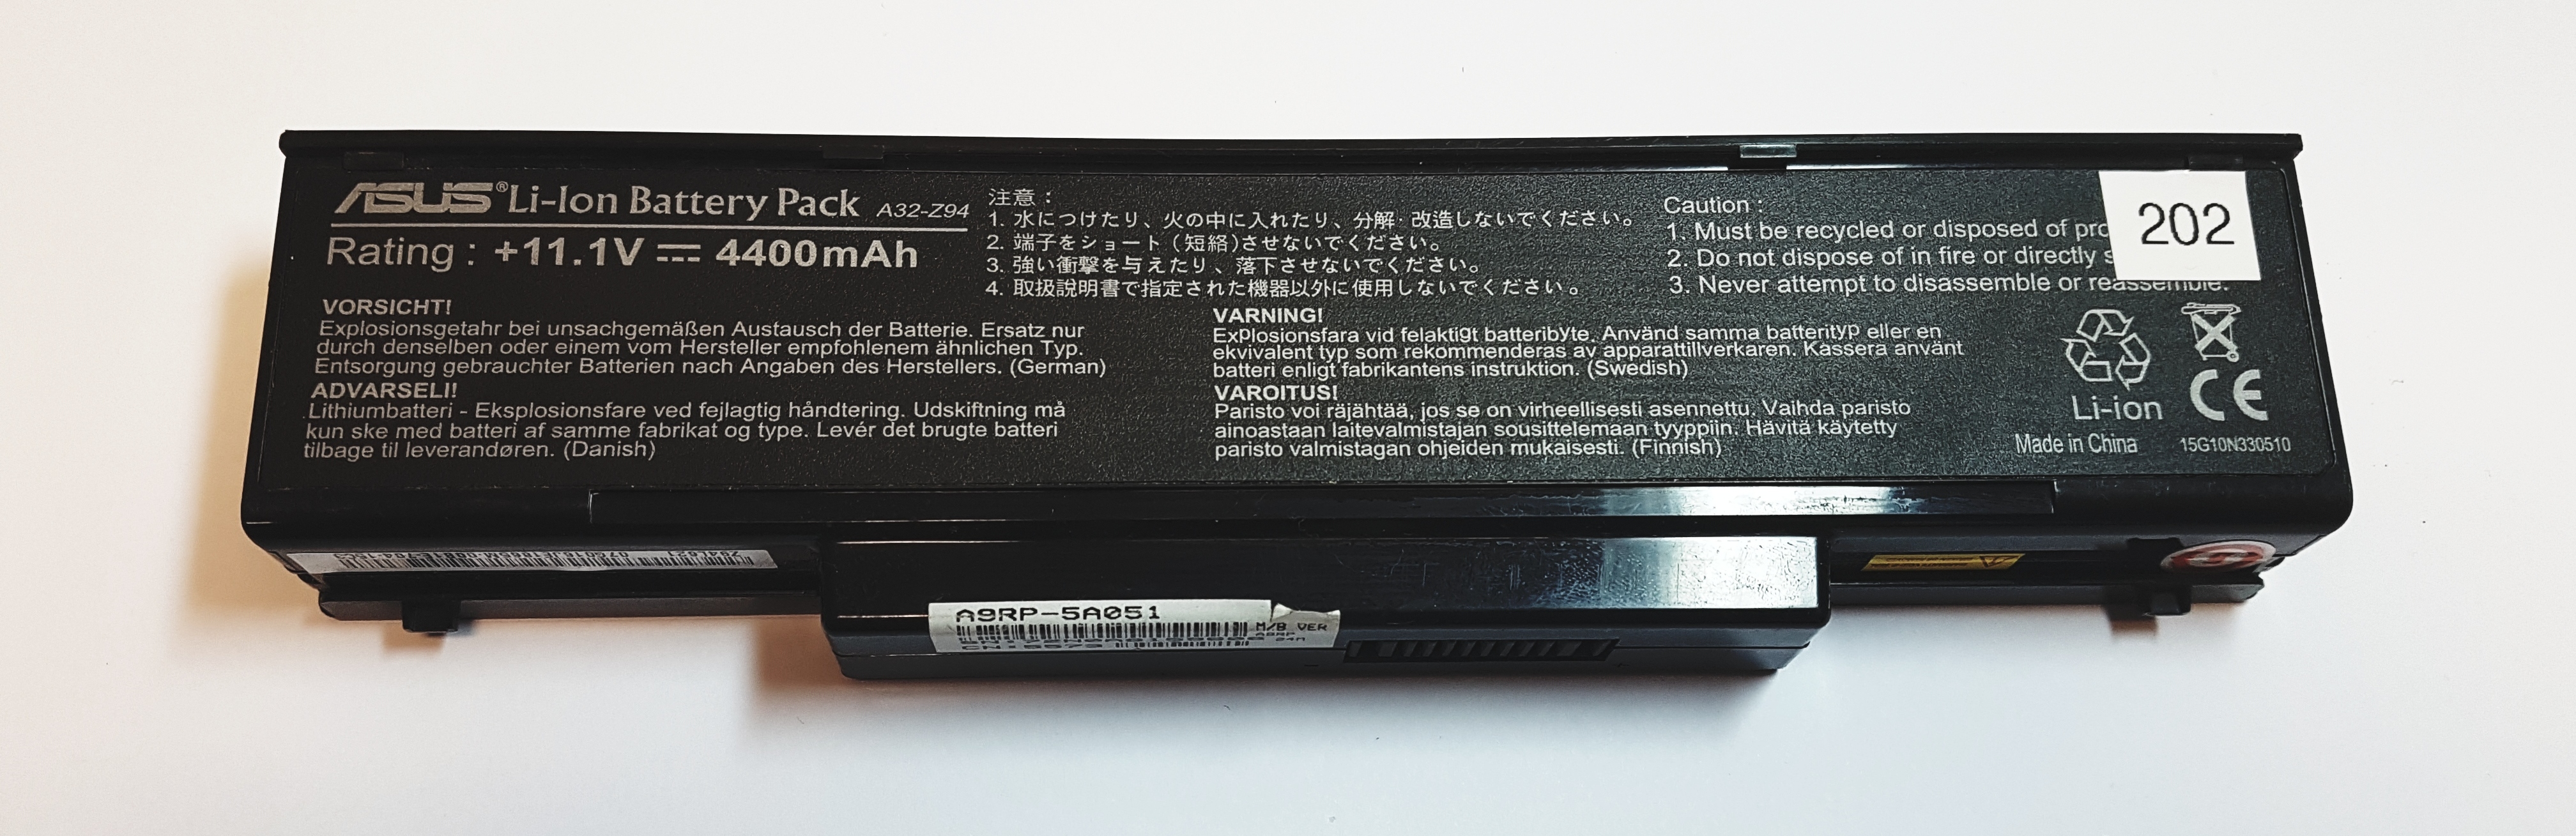 Batéria A32-Z94 Li-Ion NETESTOVANÁ z Asus - Notebooky, príslušenstvo